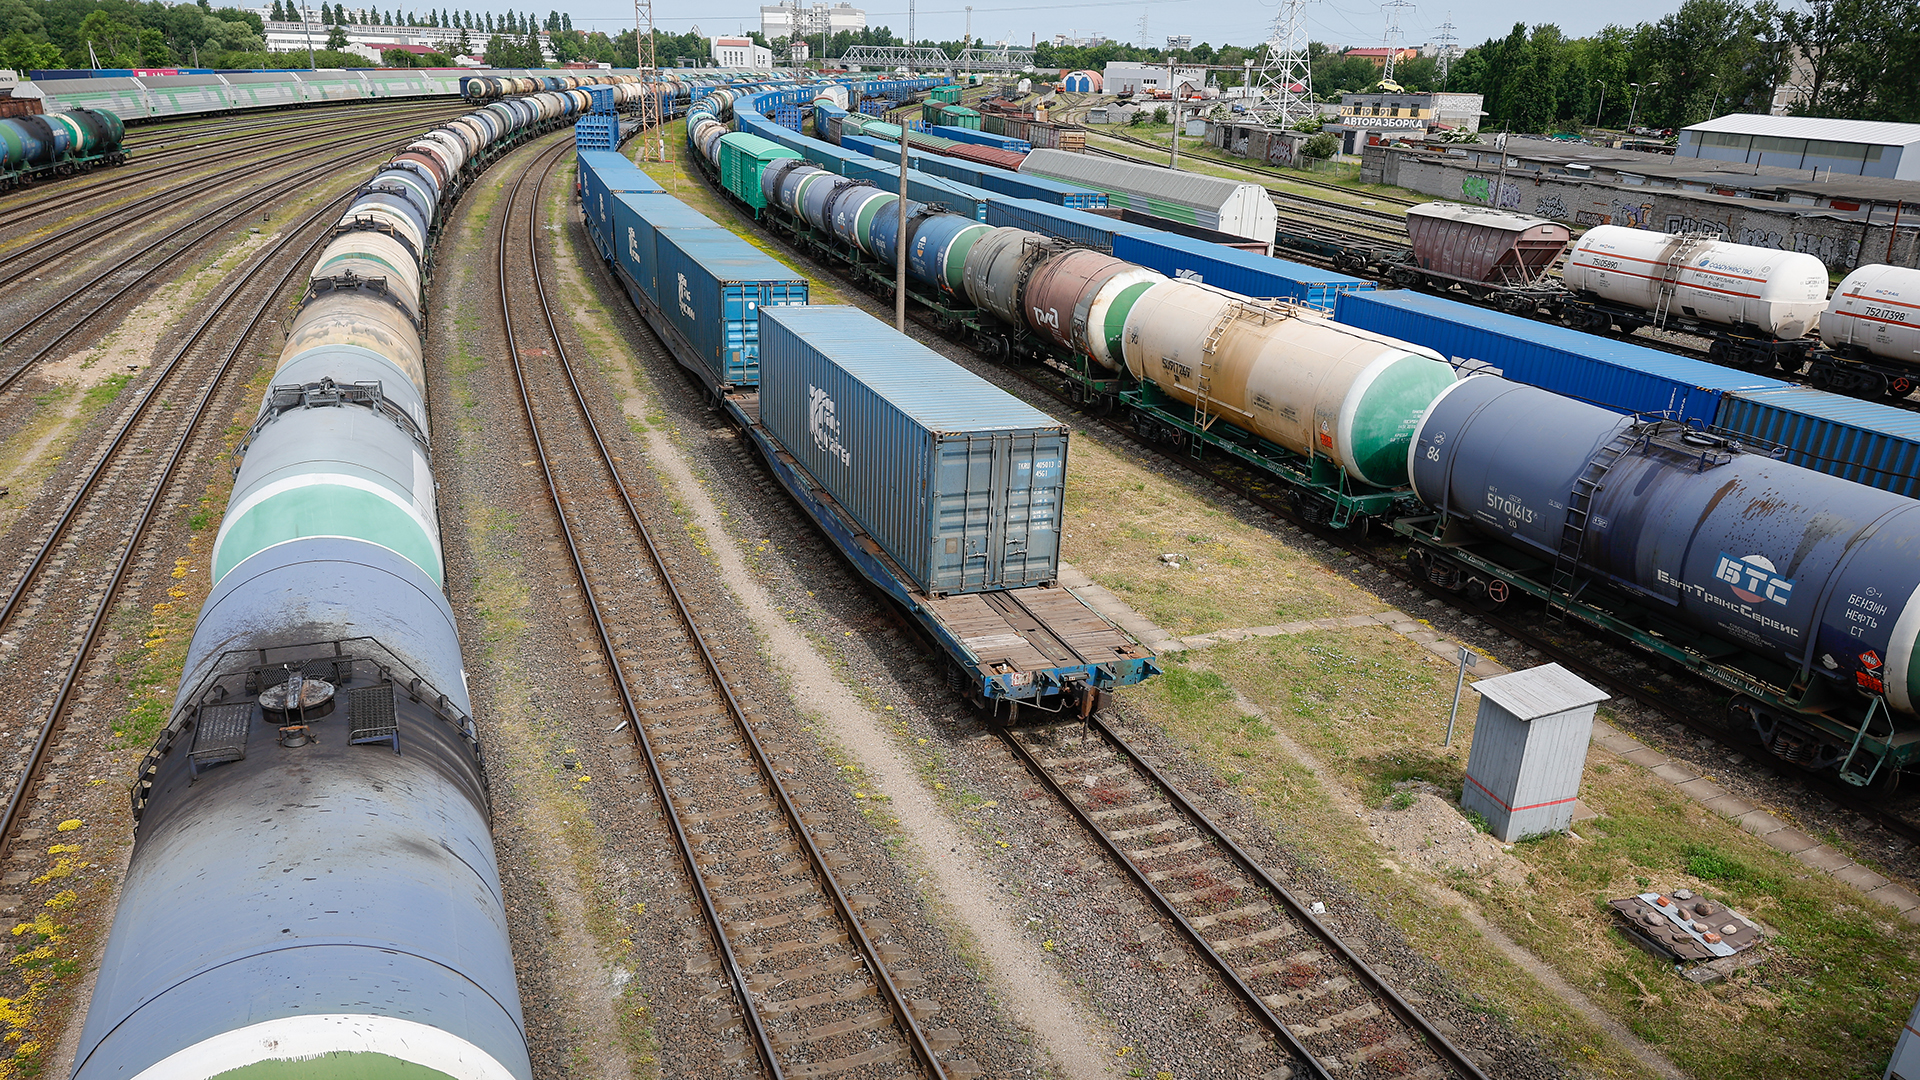 Güterwaggons sind auf dem Bahnhof Kaliningrad-Sortirovochny zu sehen. | picture alliance/dpa/TASS